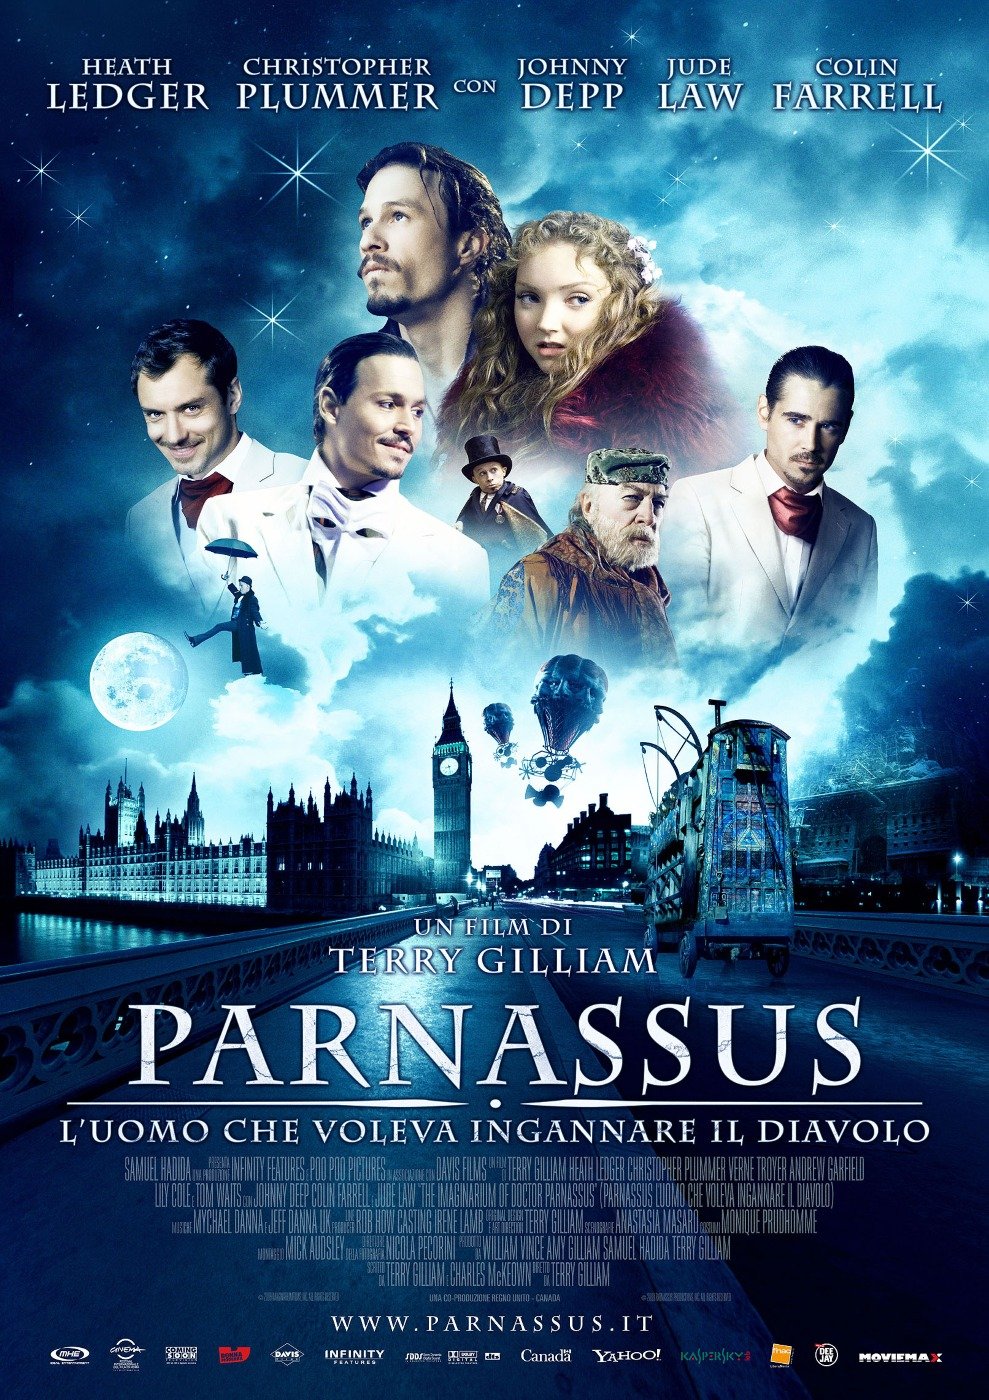 2009 The Imaginarium Of Doctor Parnassus